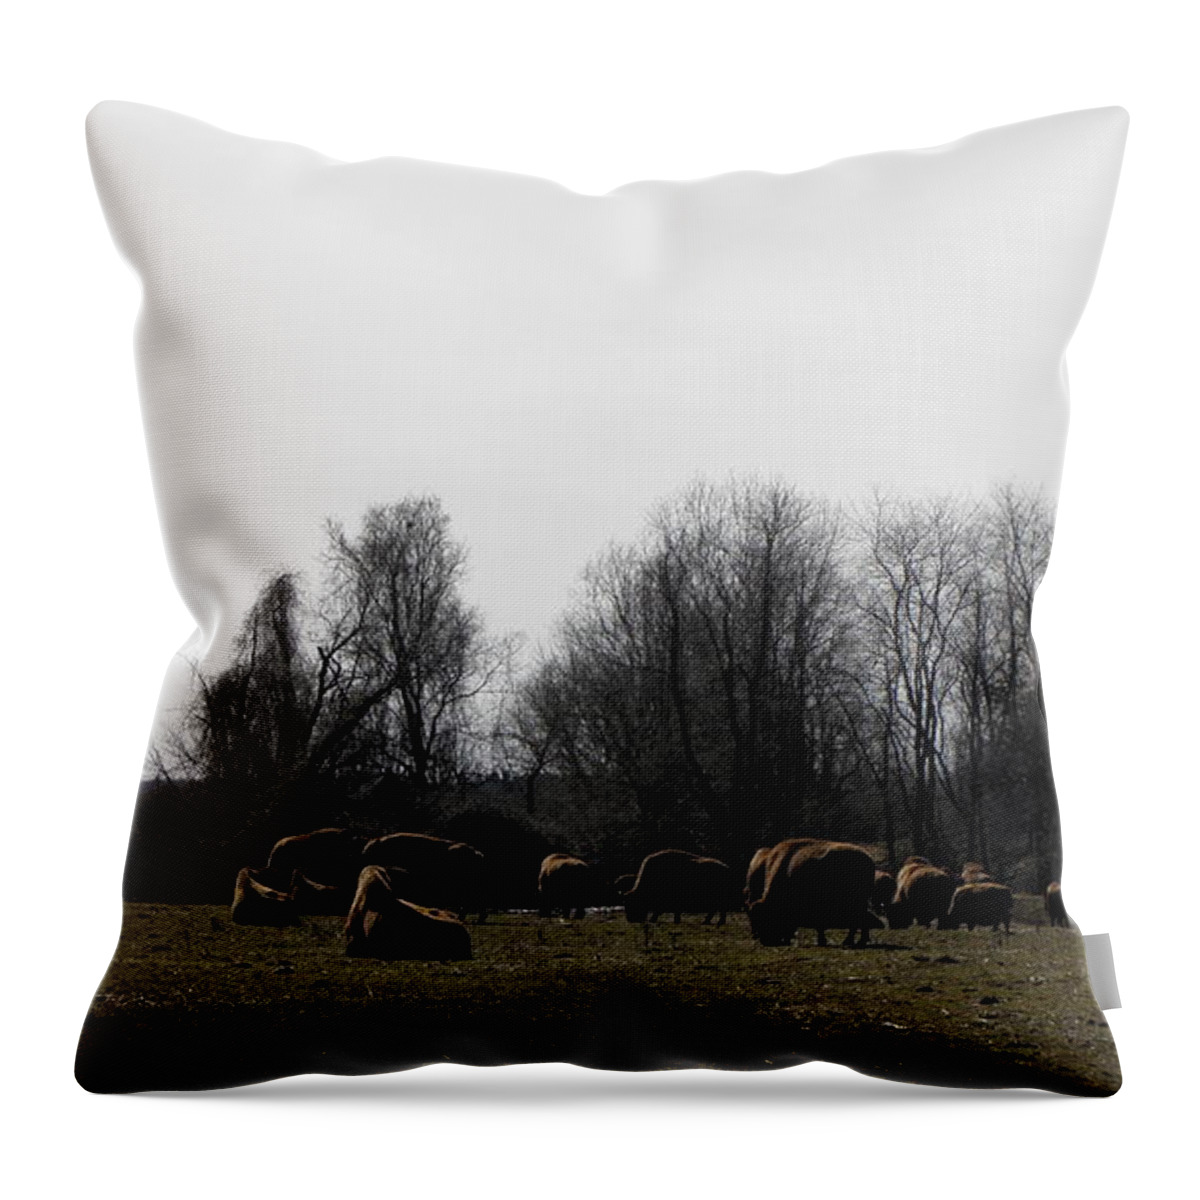 Buffalo Throw Pillow featuring the photograph Buffalo Farm in CT USA by Kim Galluzzo